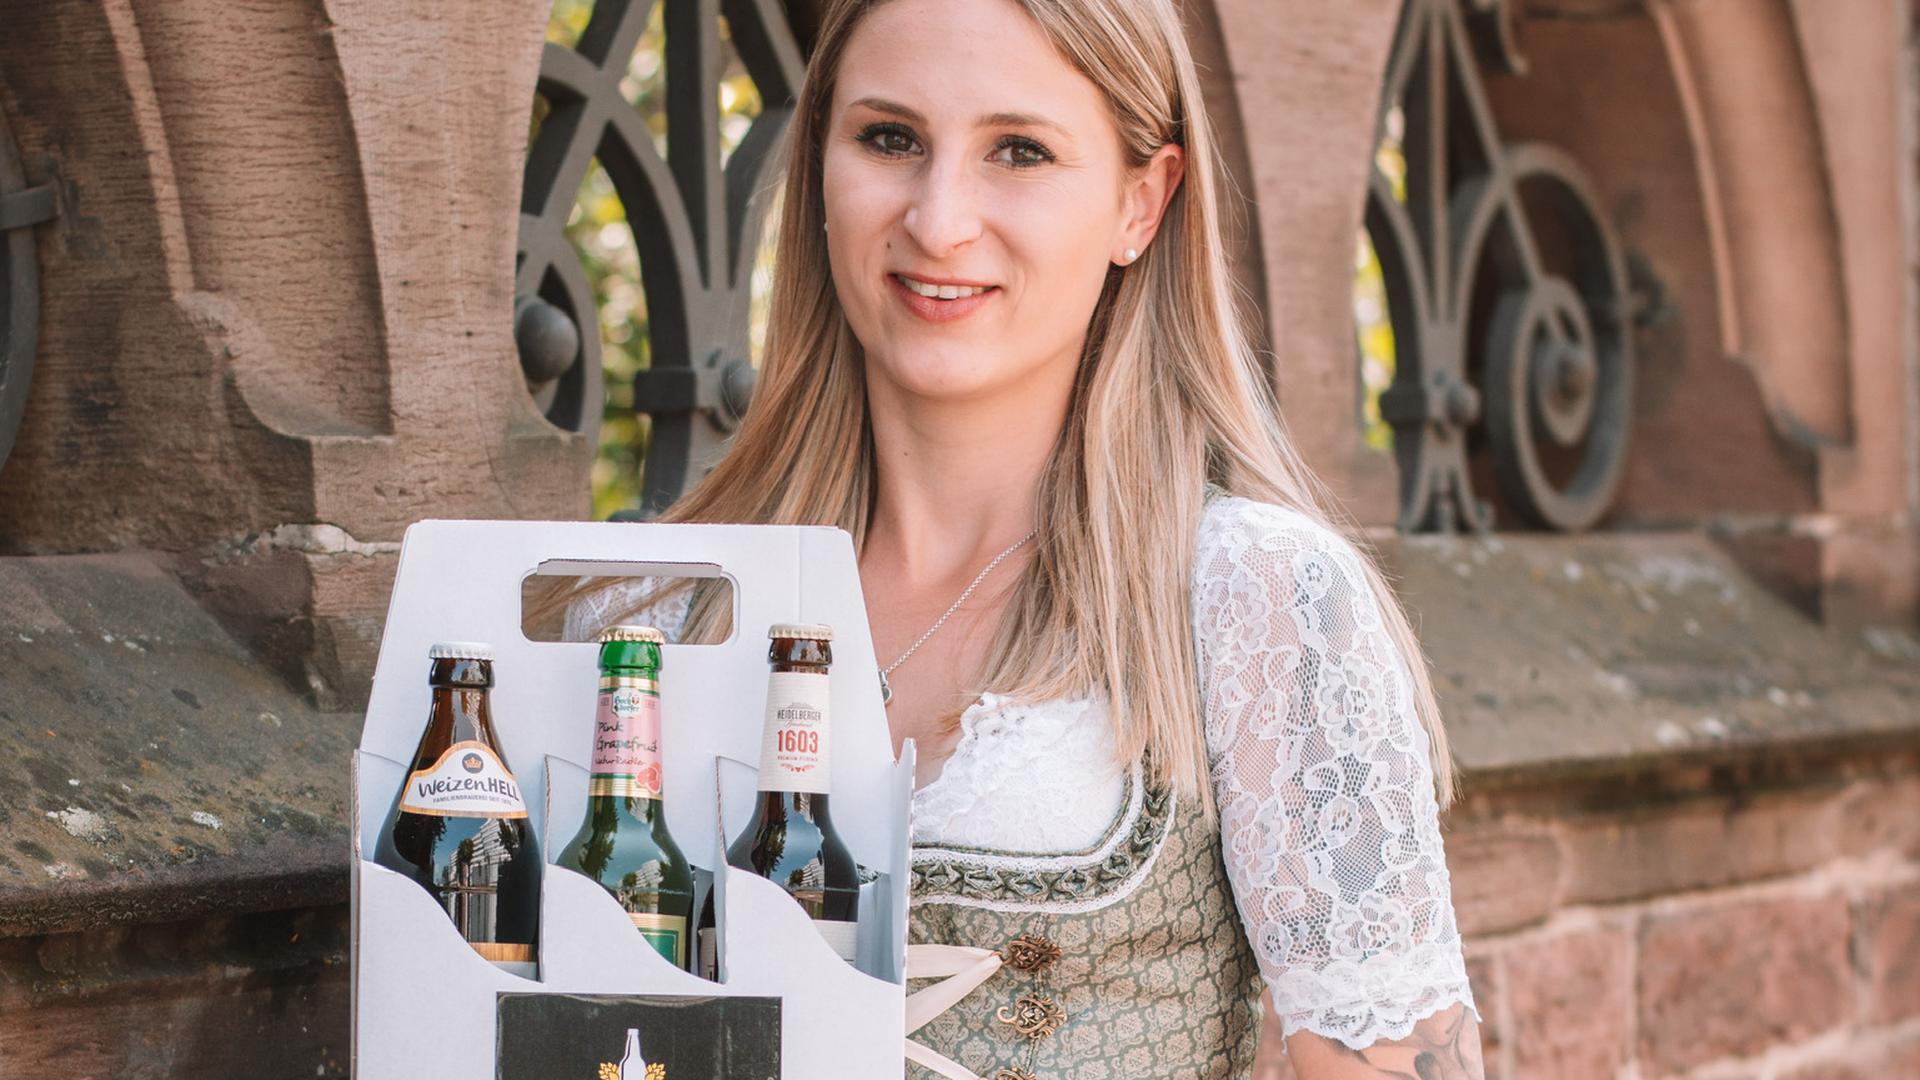 Junge Frau mit langen Haaren im Dirndkleid hält einen Karton mit verschiedenen Biersorten hoch.